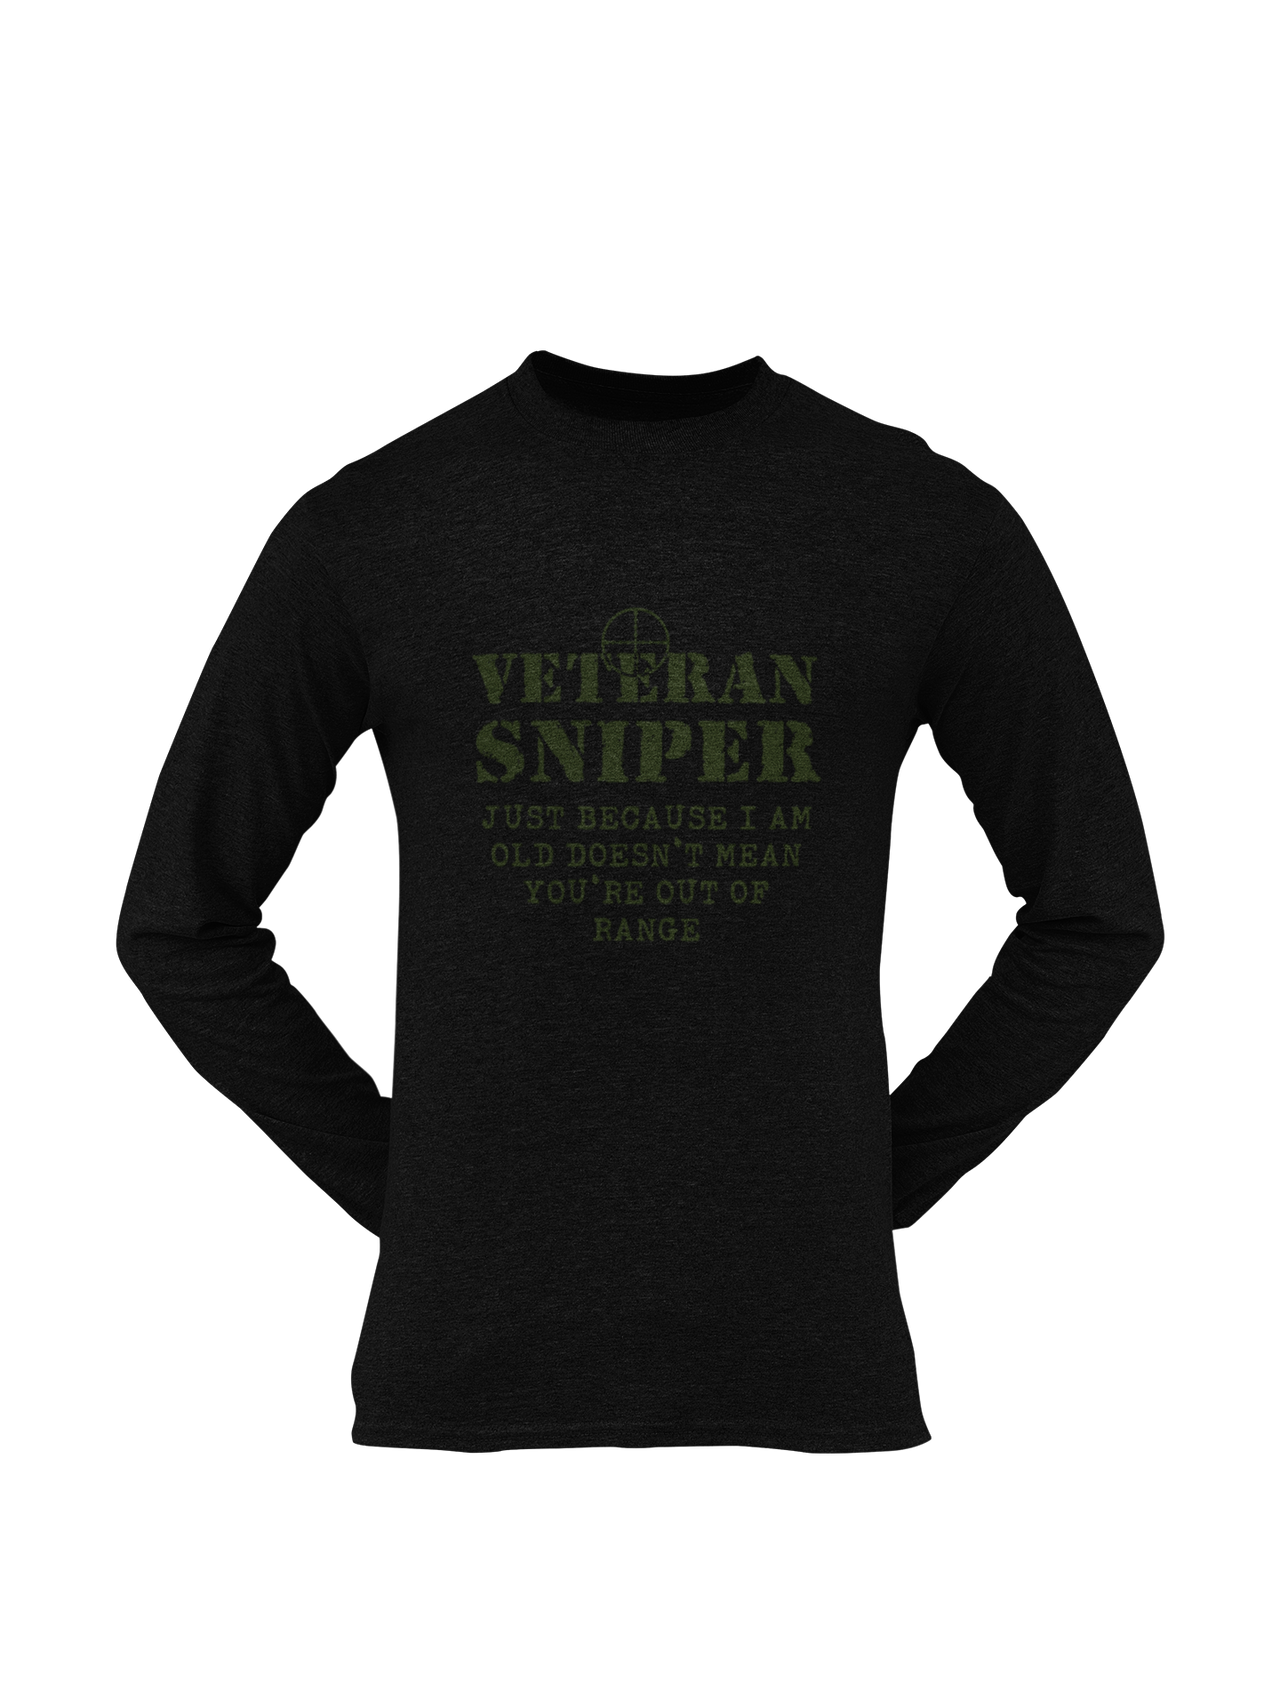 Sniper T-shirt - Veteran Sniper, Just Because I Am Old..... (Men)